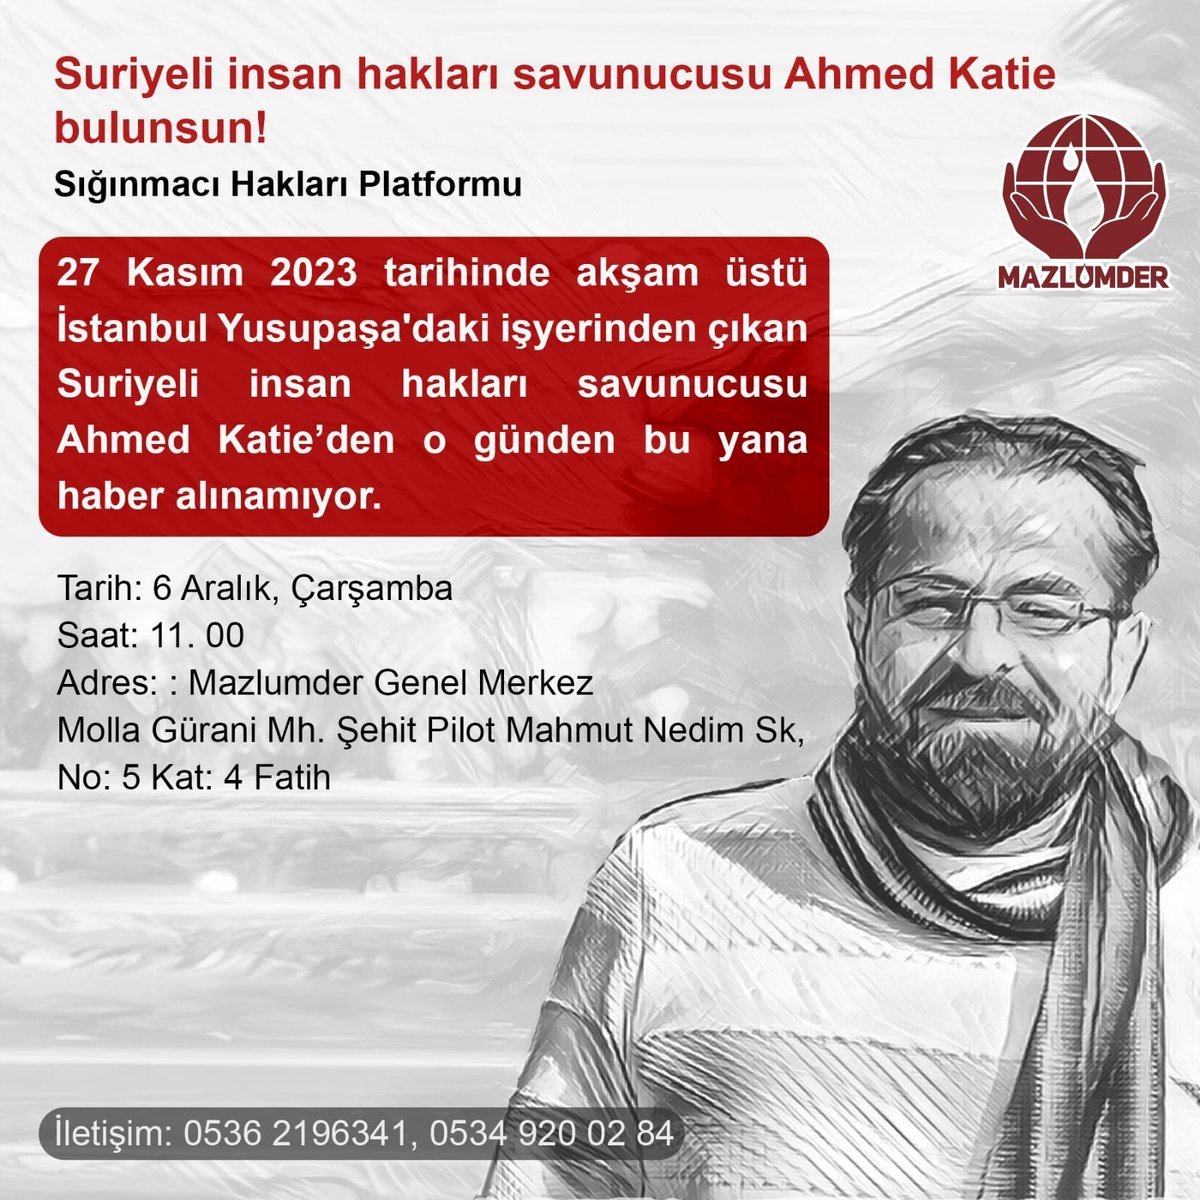 27 Kasım 2023 tarihinde akşam üstü İstanbul Yusupaşa'daki işyerinden çıkan Suriyeli insan hakları savunucusu Ahmed Katie’den o günden bu yana haber alınamıyor.